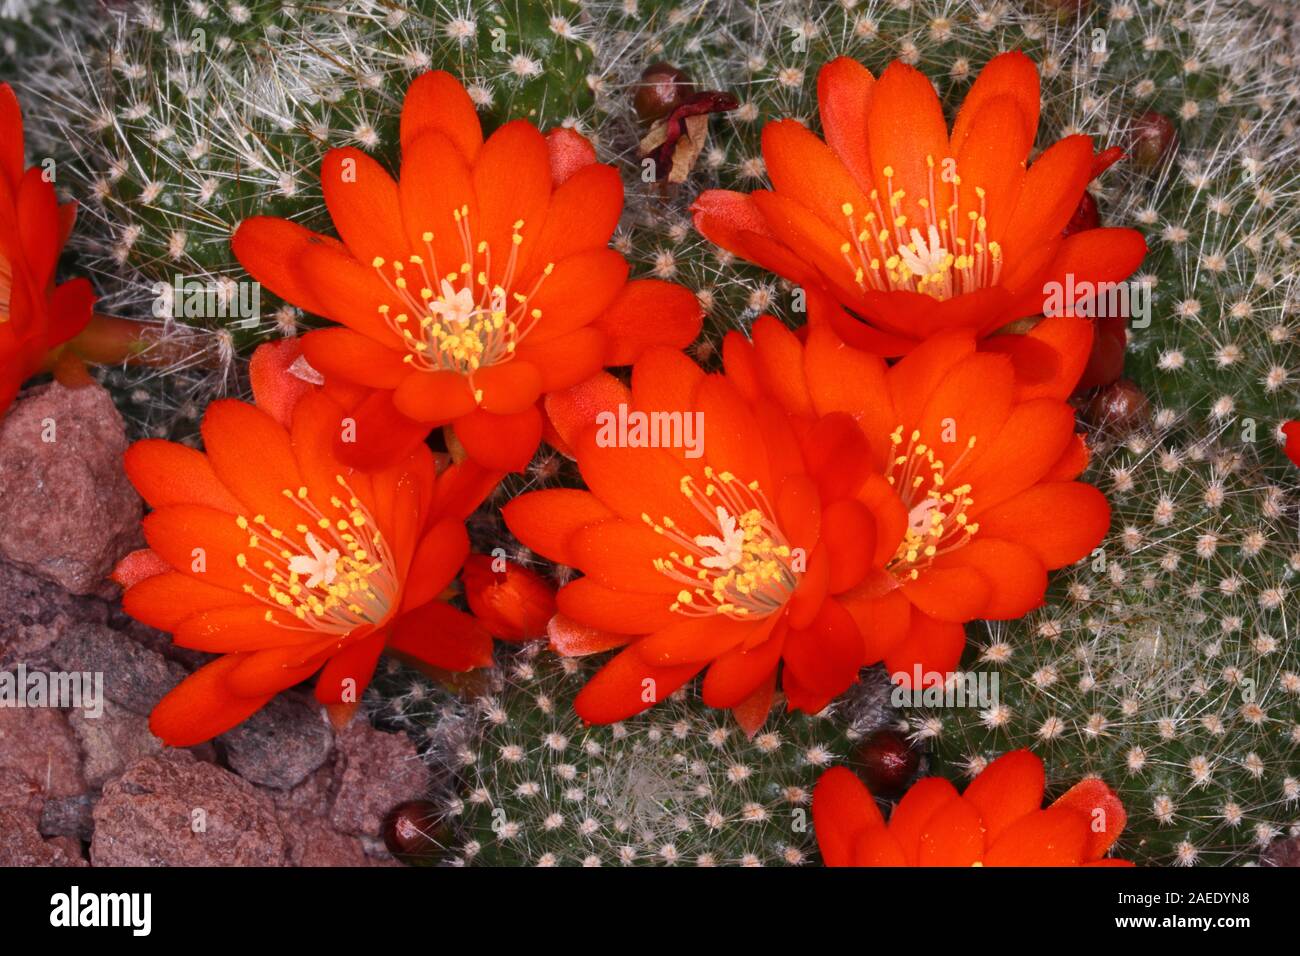 Rebutia minuscula è una specie di cactus da Argentina del nord. I fiori sono rosso, fino a 4 cm (1,6 in) di lunghezza. Foto Stock